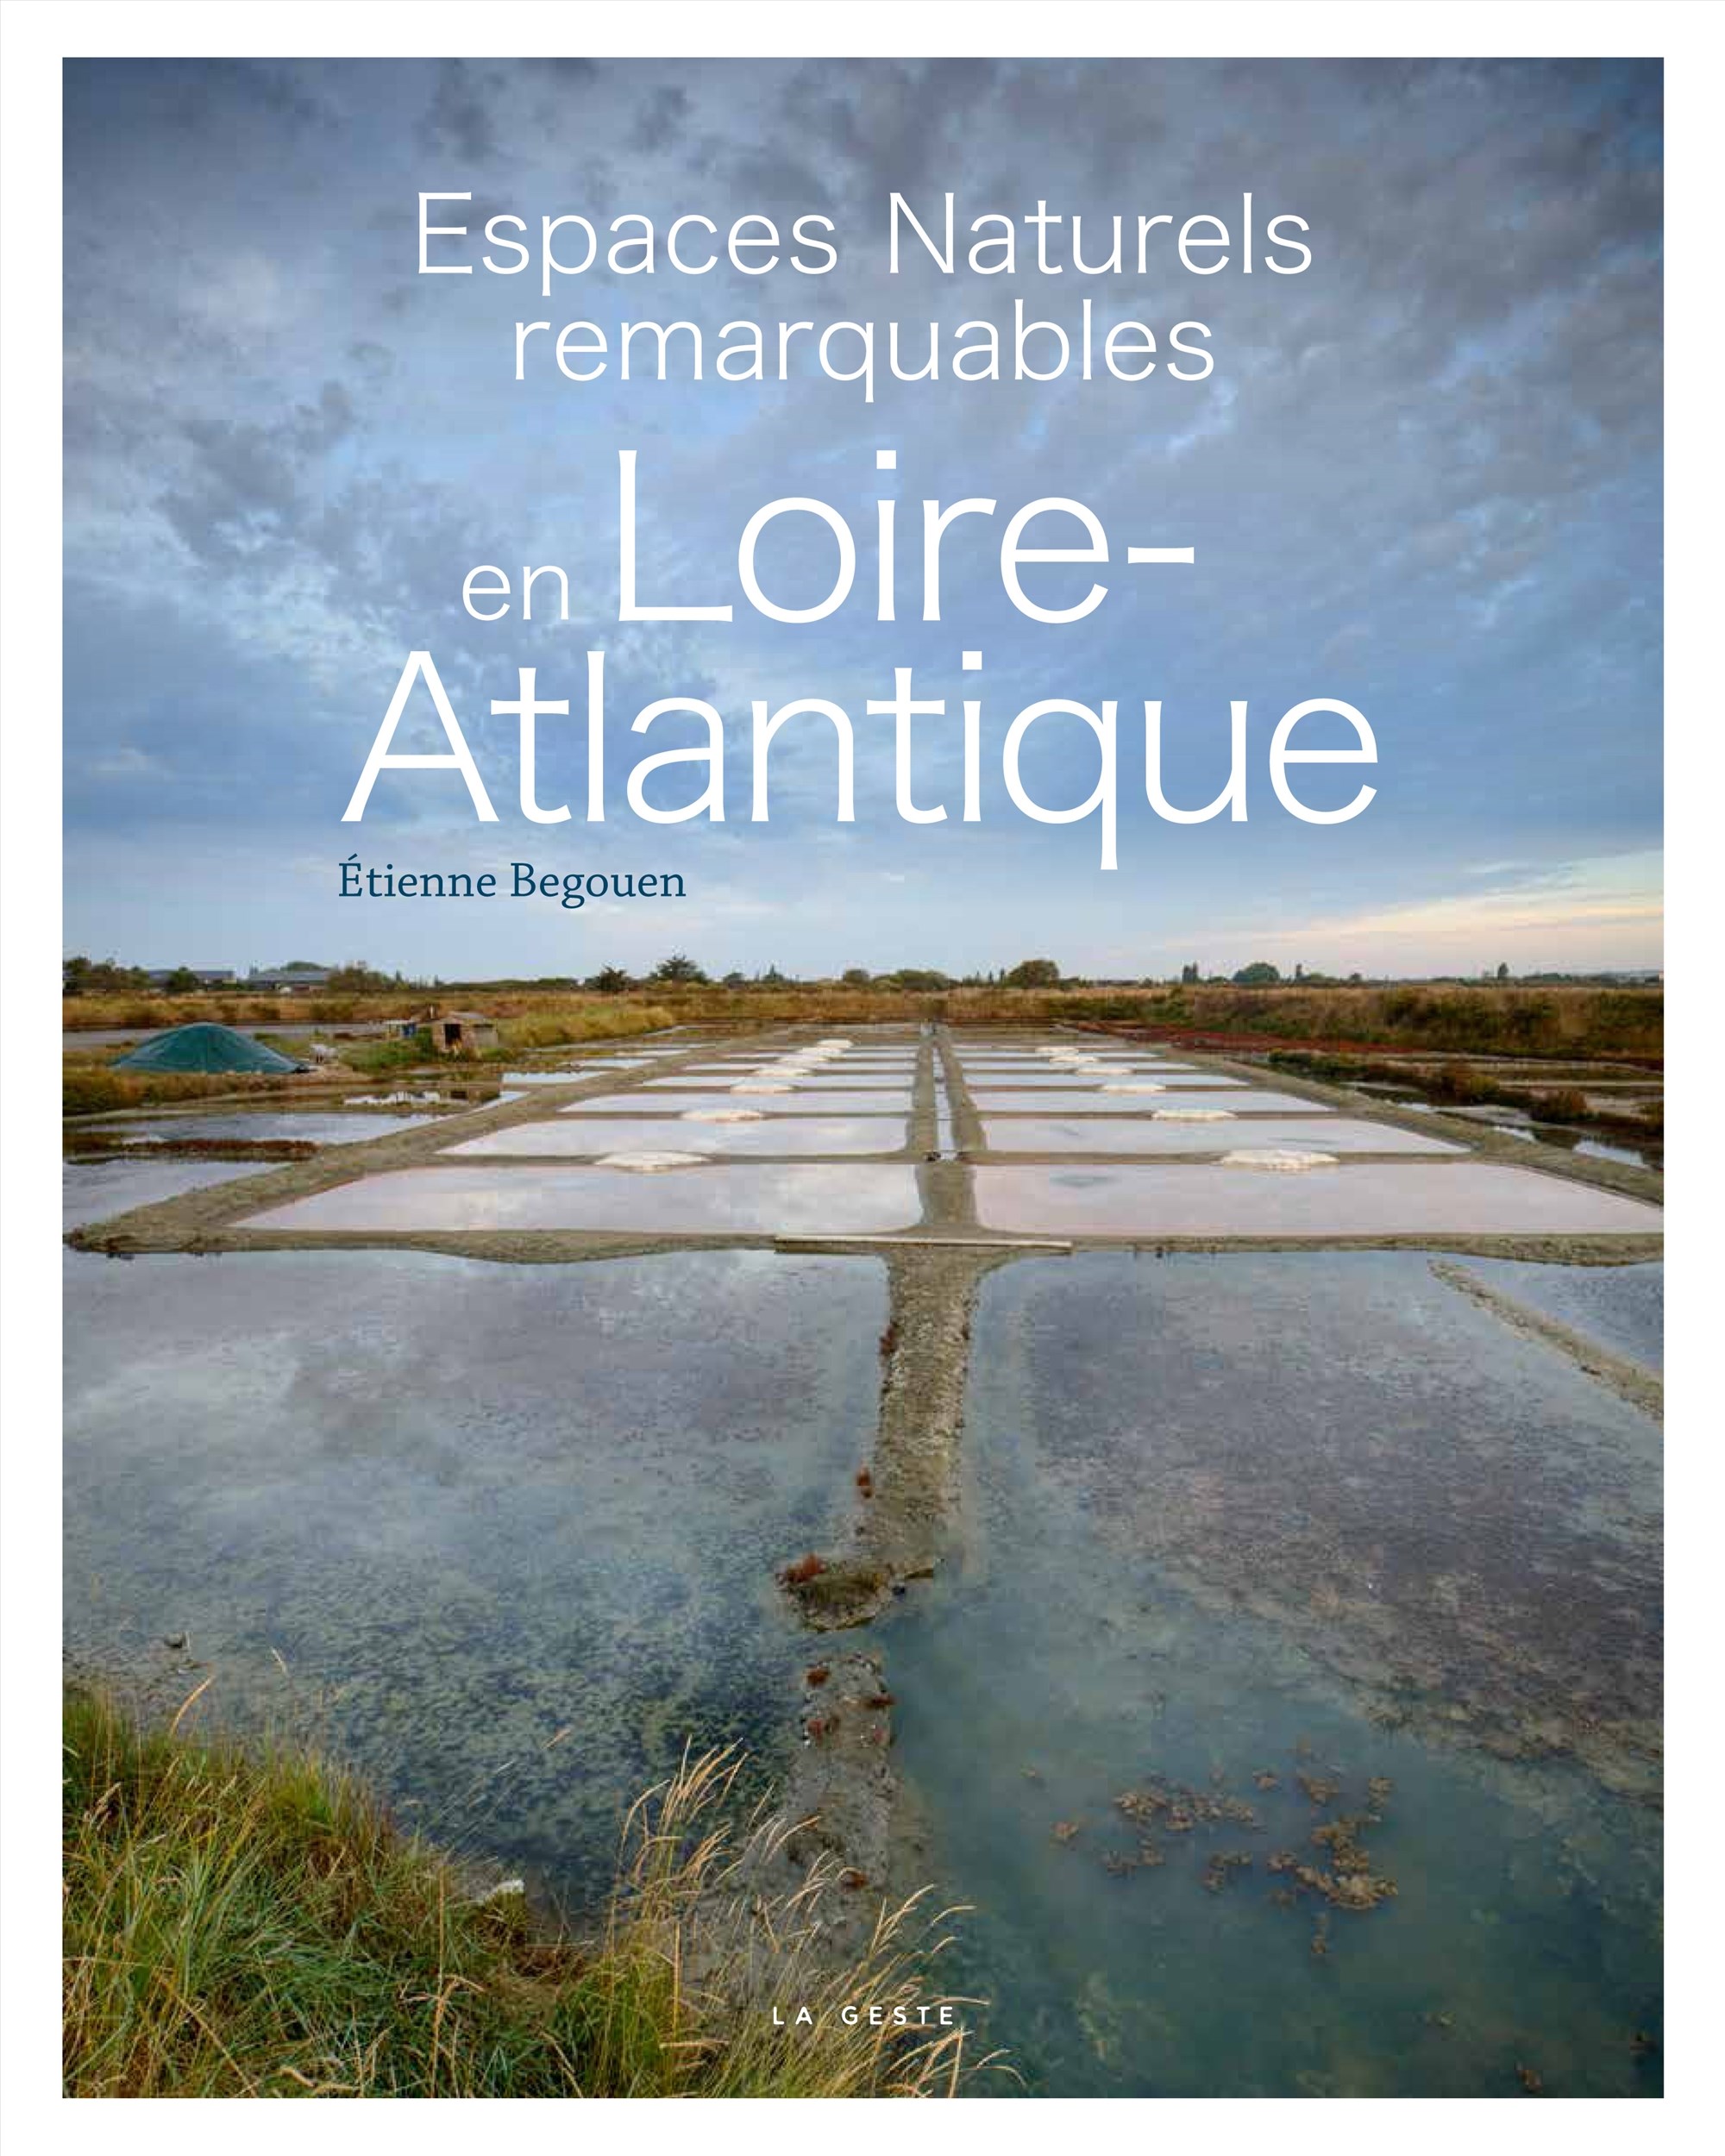 Espaces naturels remarquables en Loire-Atlantique © Étienne Begouen